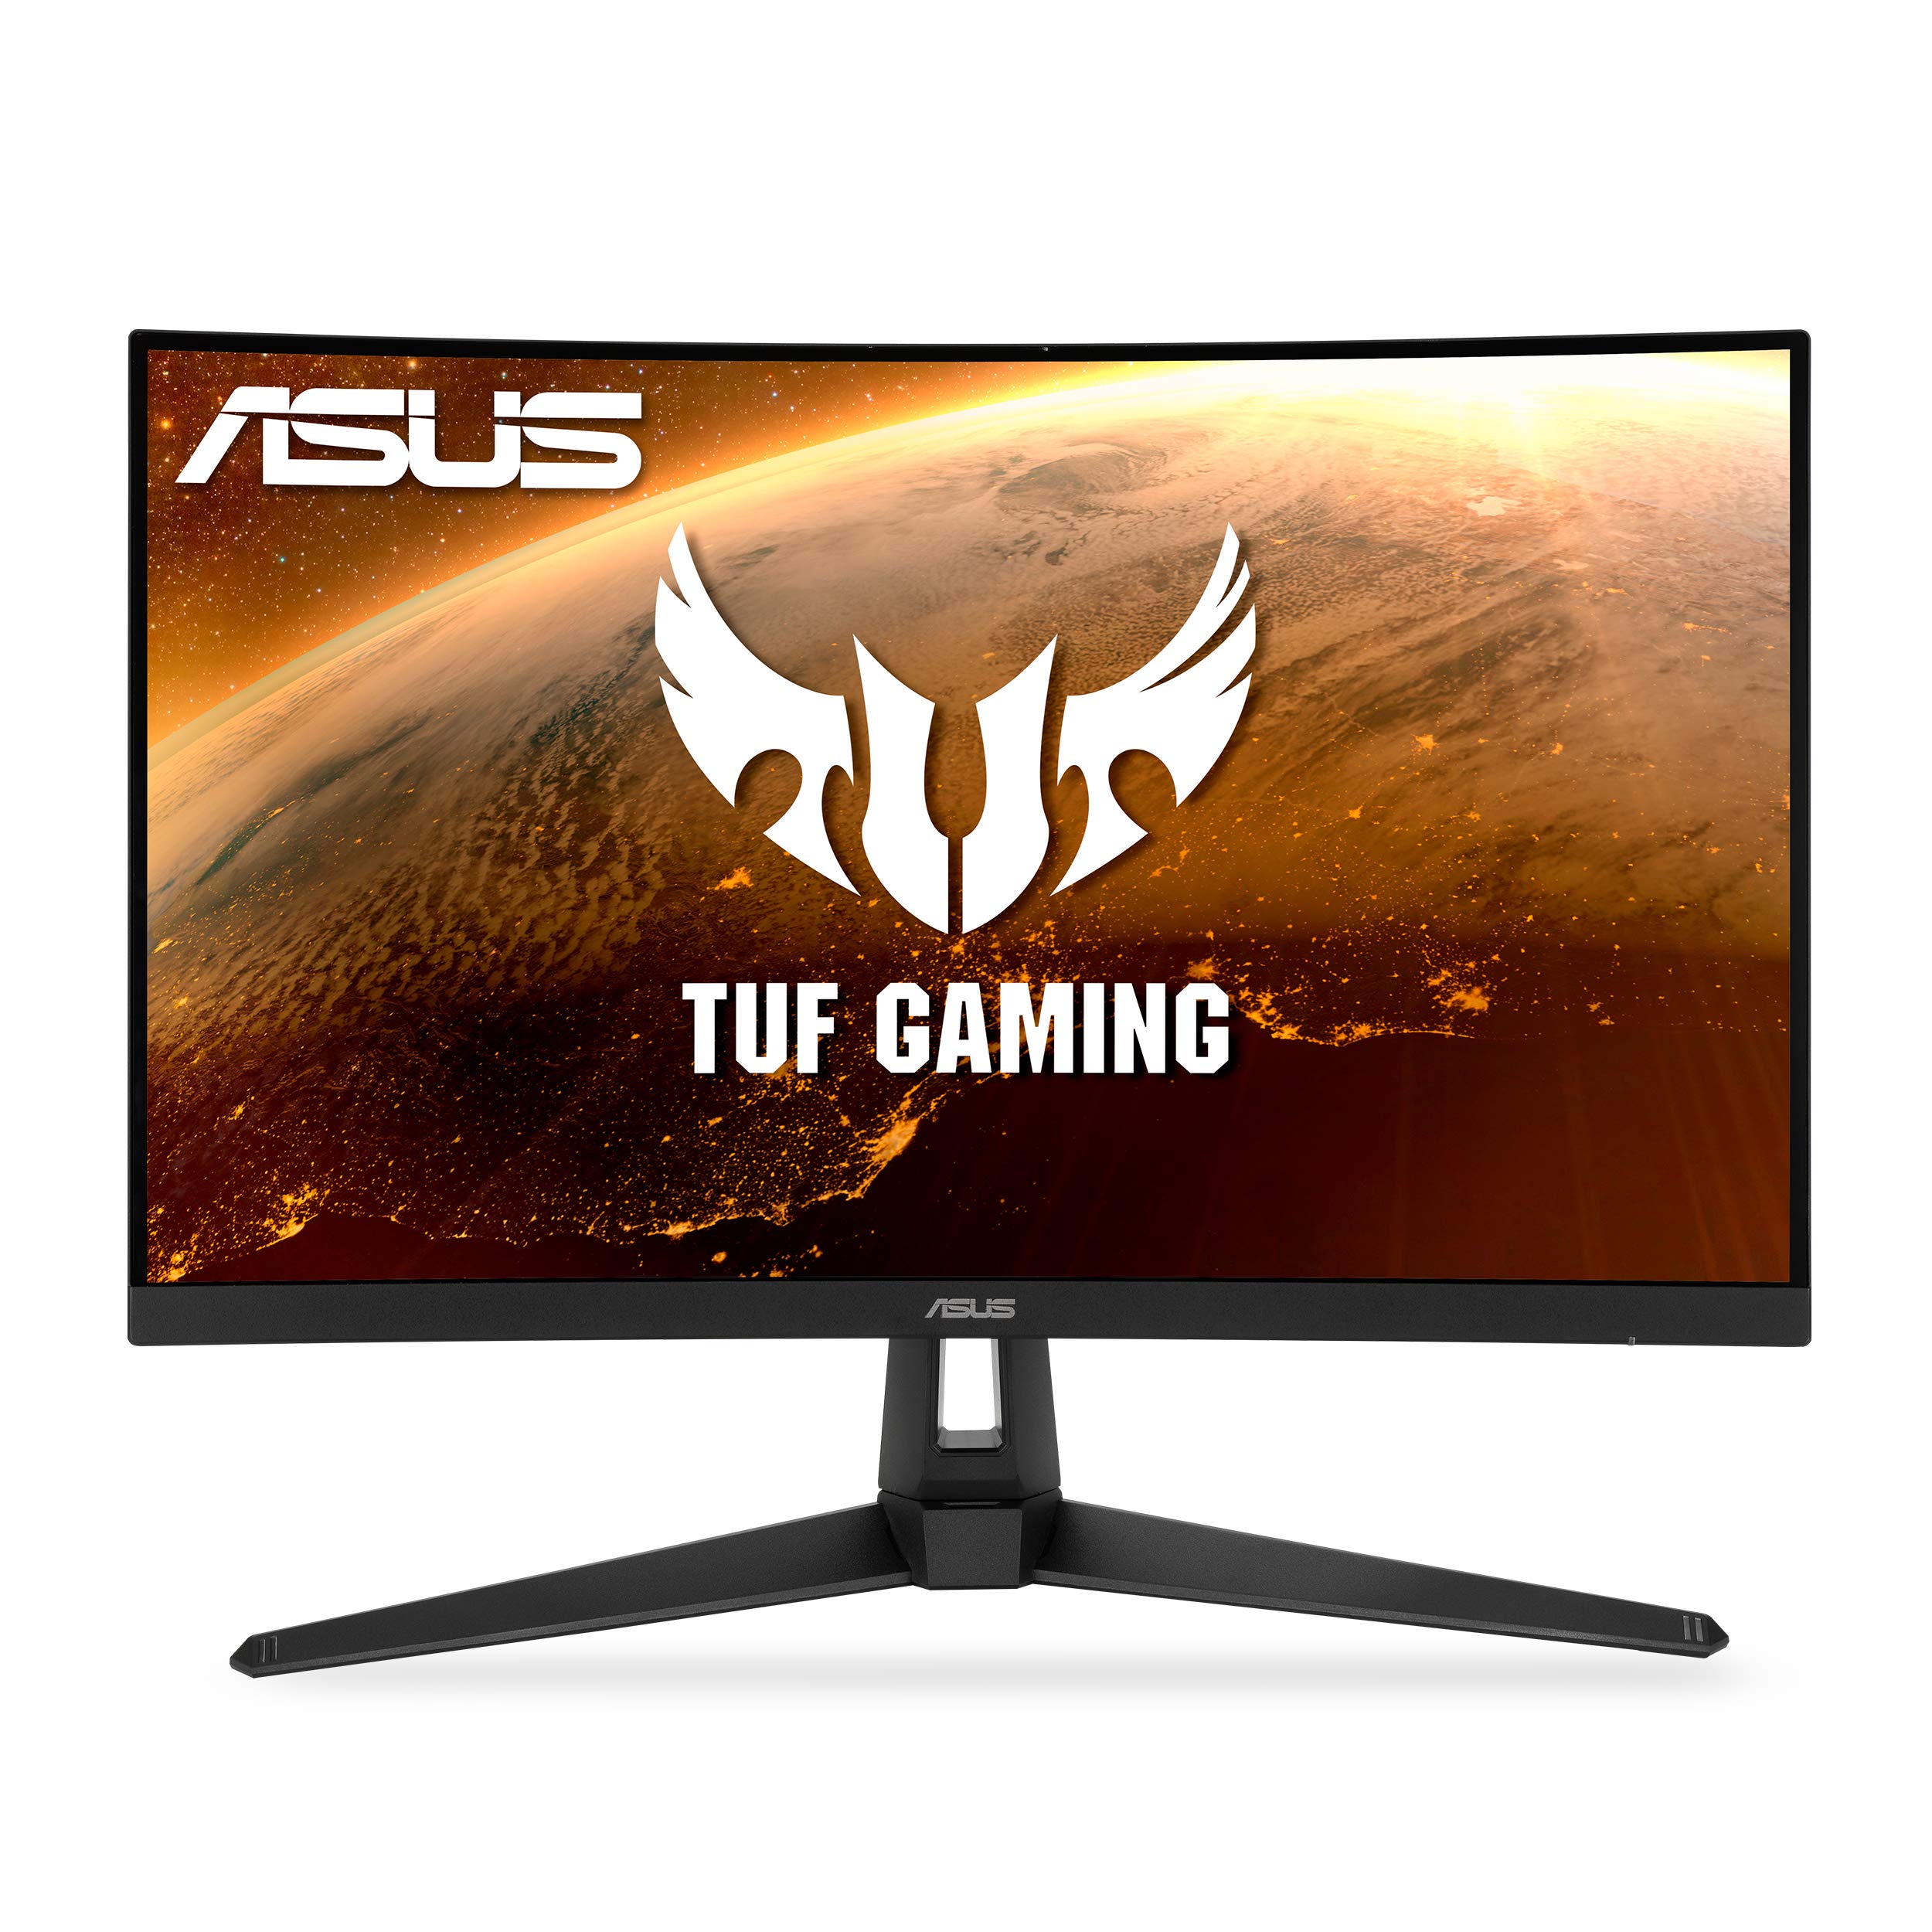 Asus TUF Gaming 27 游戏显示器